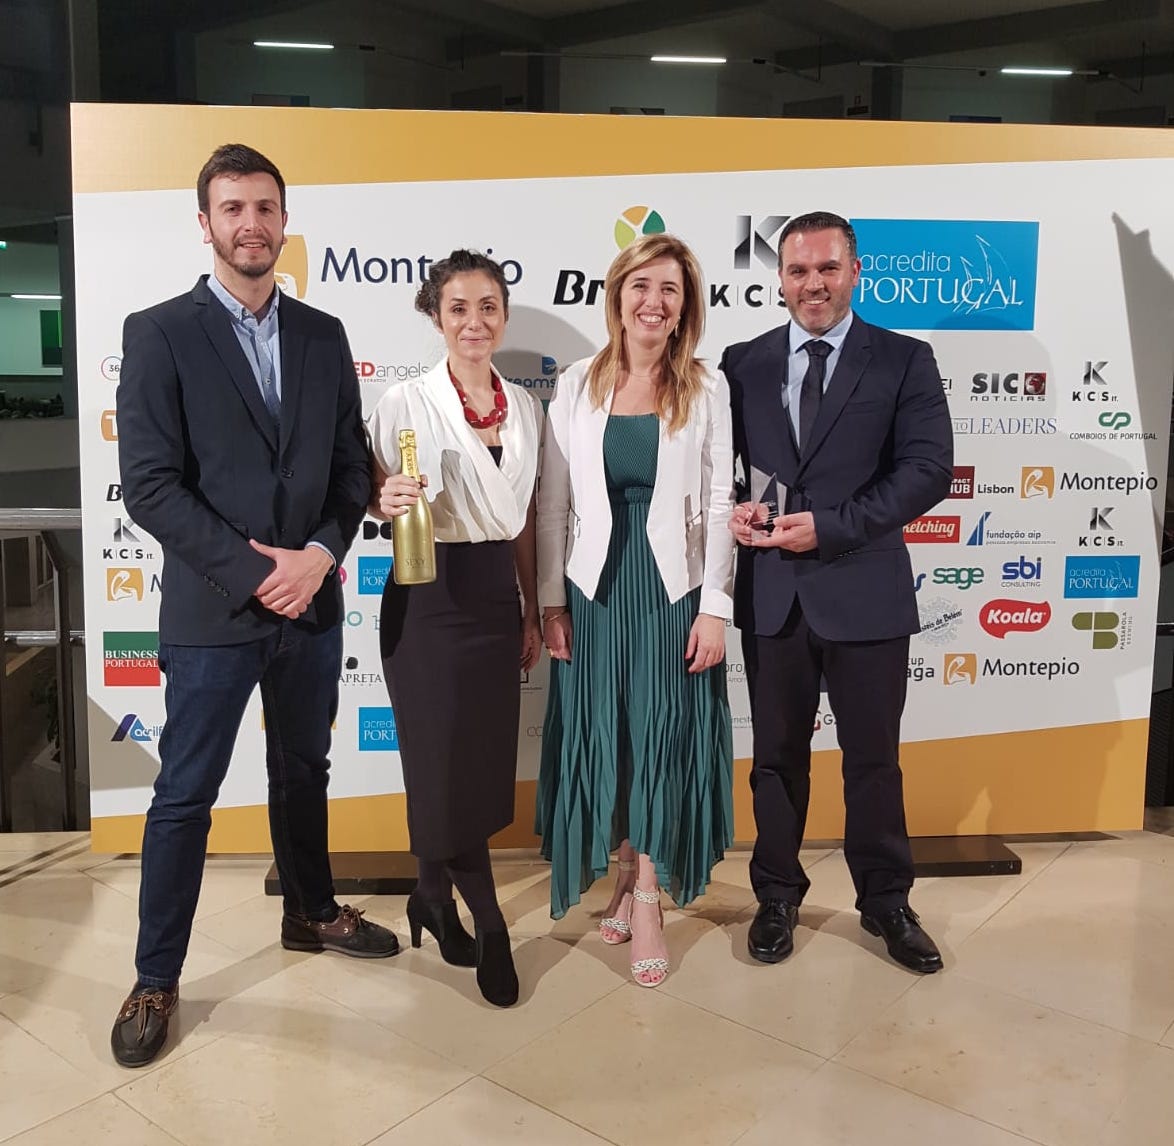 O projecto “VR4Neuropain” foi distinguido novamente. Agora conquista 1ª lugar no concurso Acredita Portugal na categoria Novas Tecnologias!